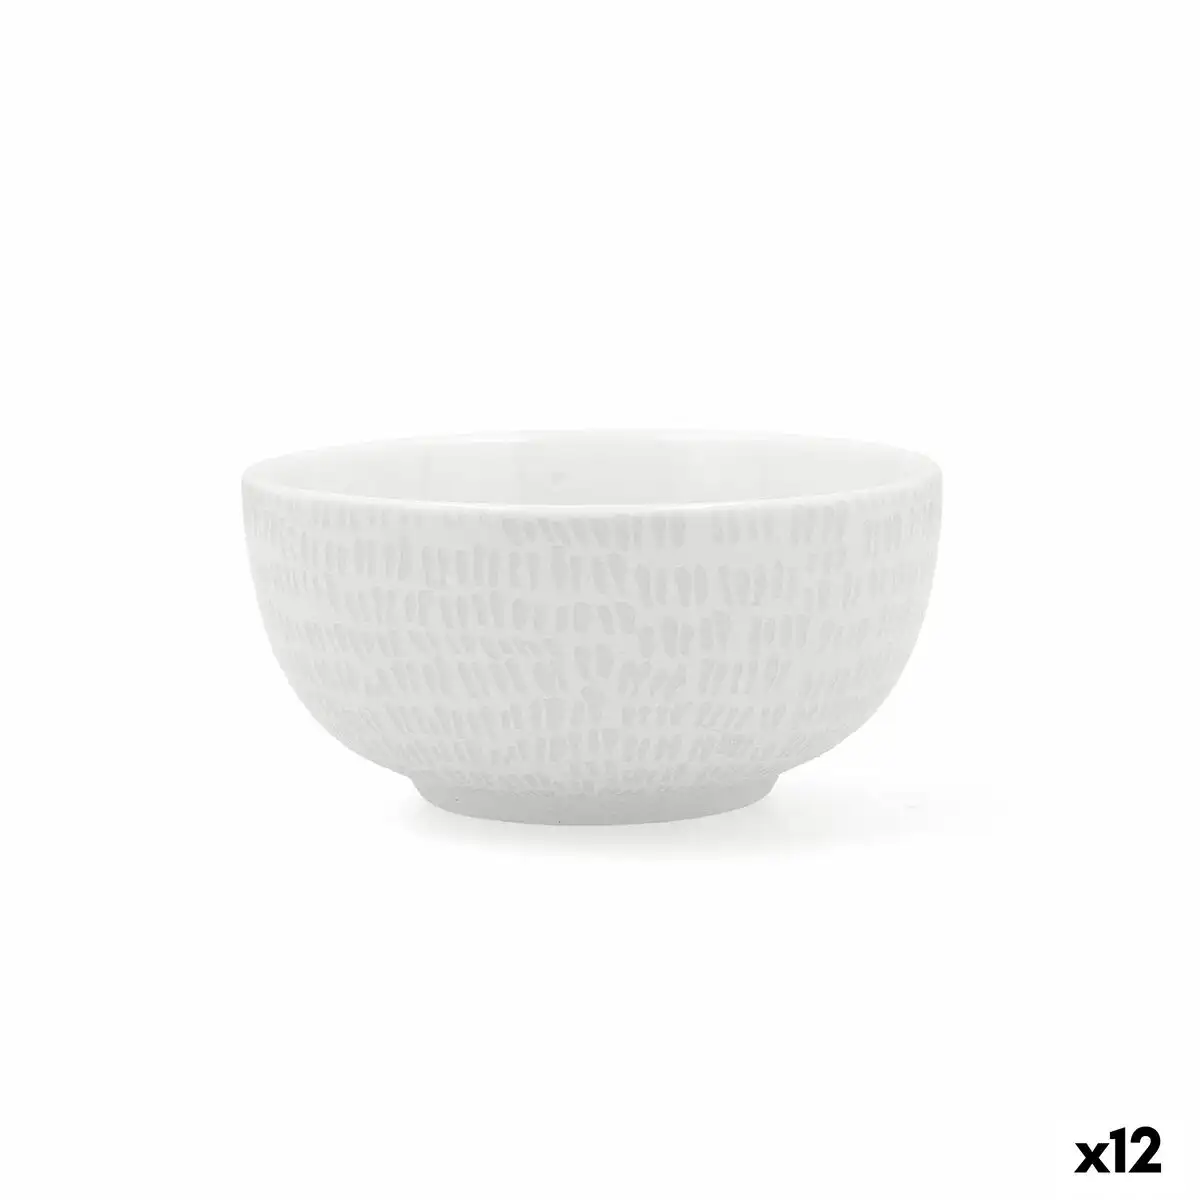 Bol ariane ripple ceramique blanc 12 cm 12 unites _3893. DIAYTAR SENEGAL - L'Art de Vivre en Couleurs et en Styles. Parcourez notre sélection et trouvez des articles qui reflètent votre personnalité et votre goût pour la vie.